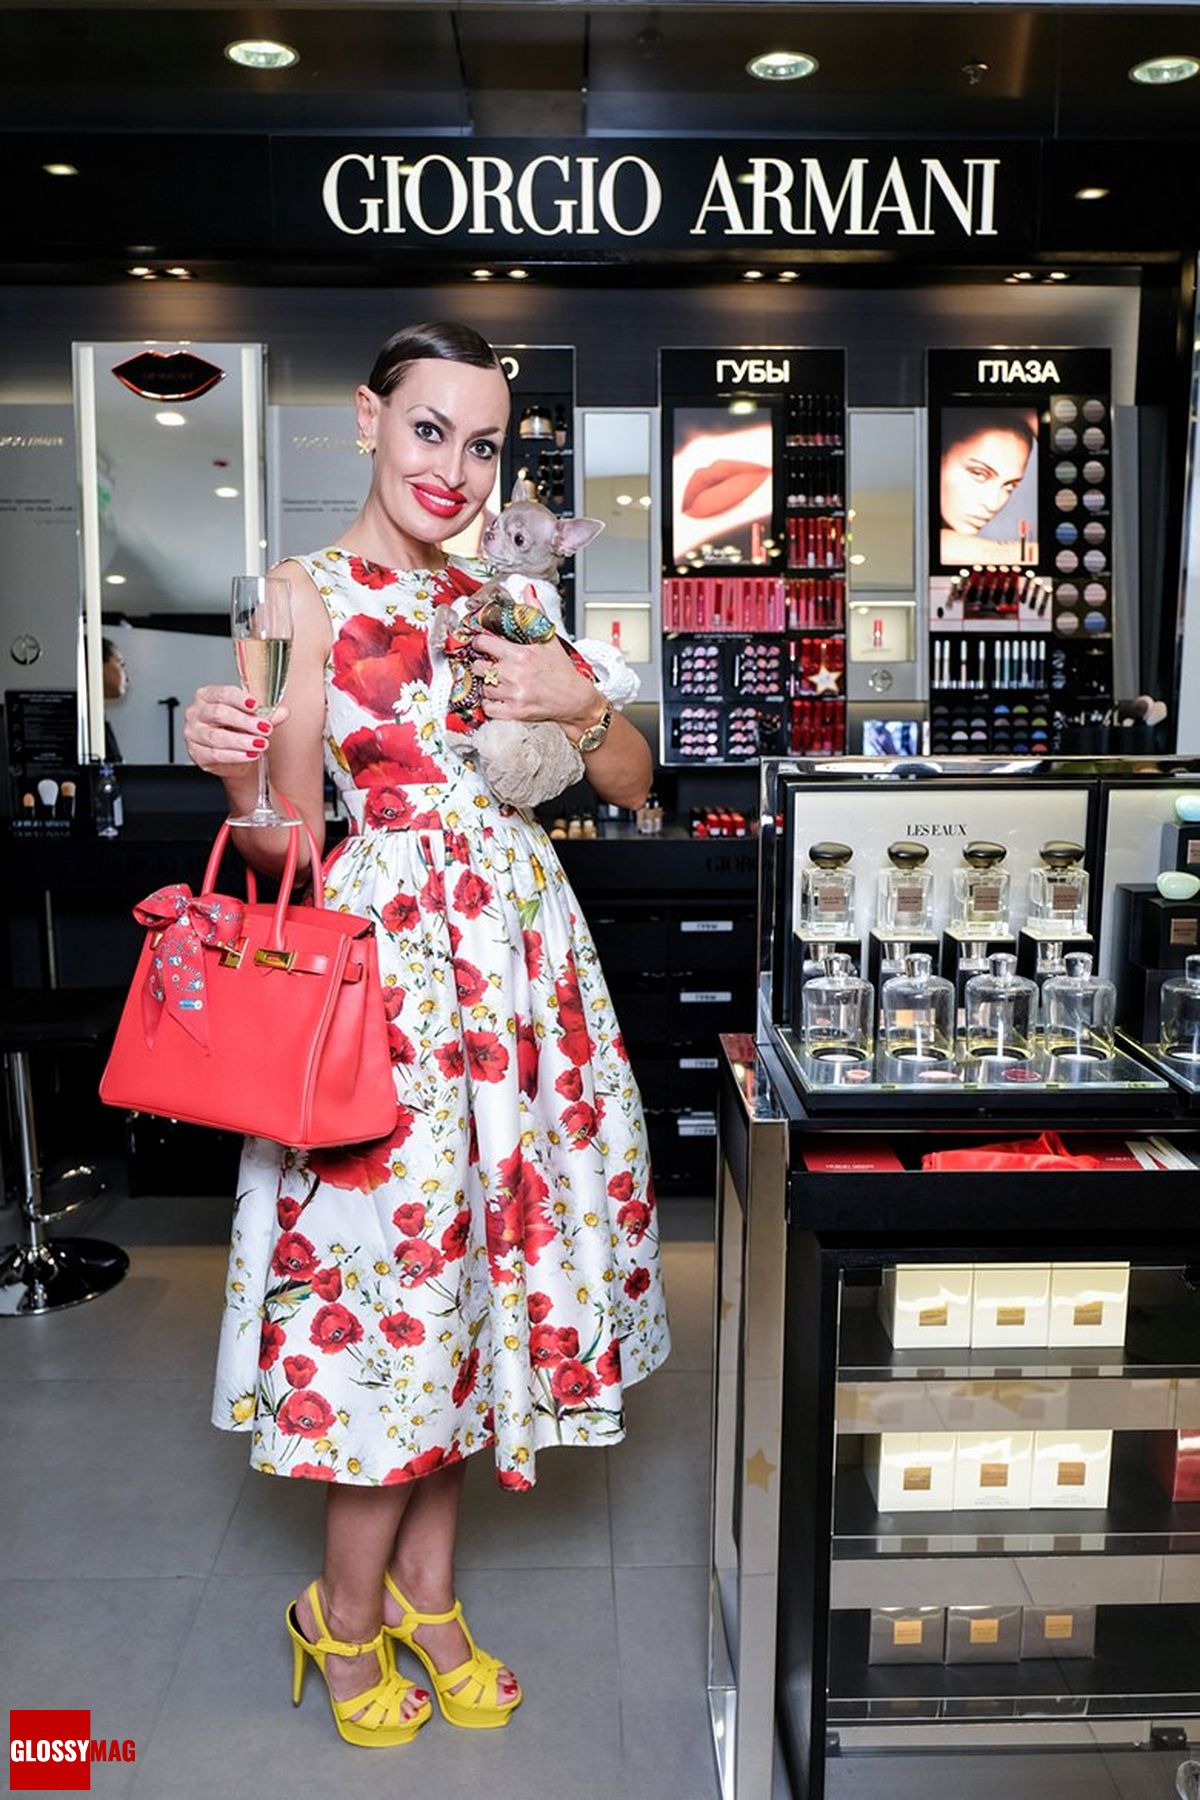 Инесса Швацкая в корнере Giorgio Armani на закрытом мероприятии Beauty CHOICE в Rivoli Perfumery в ТГ Модный сезон, 28 июня 2017 г.